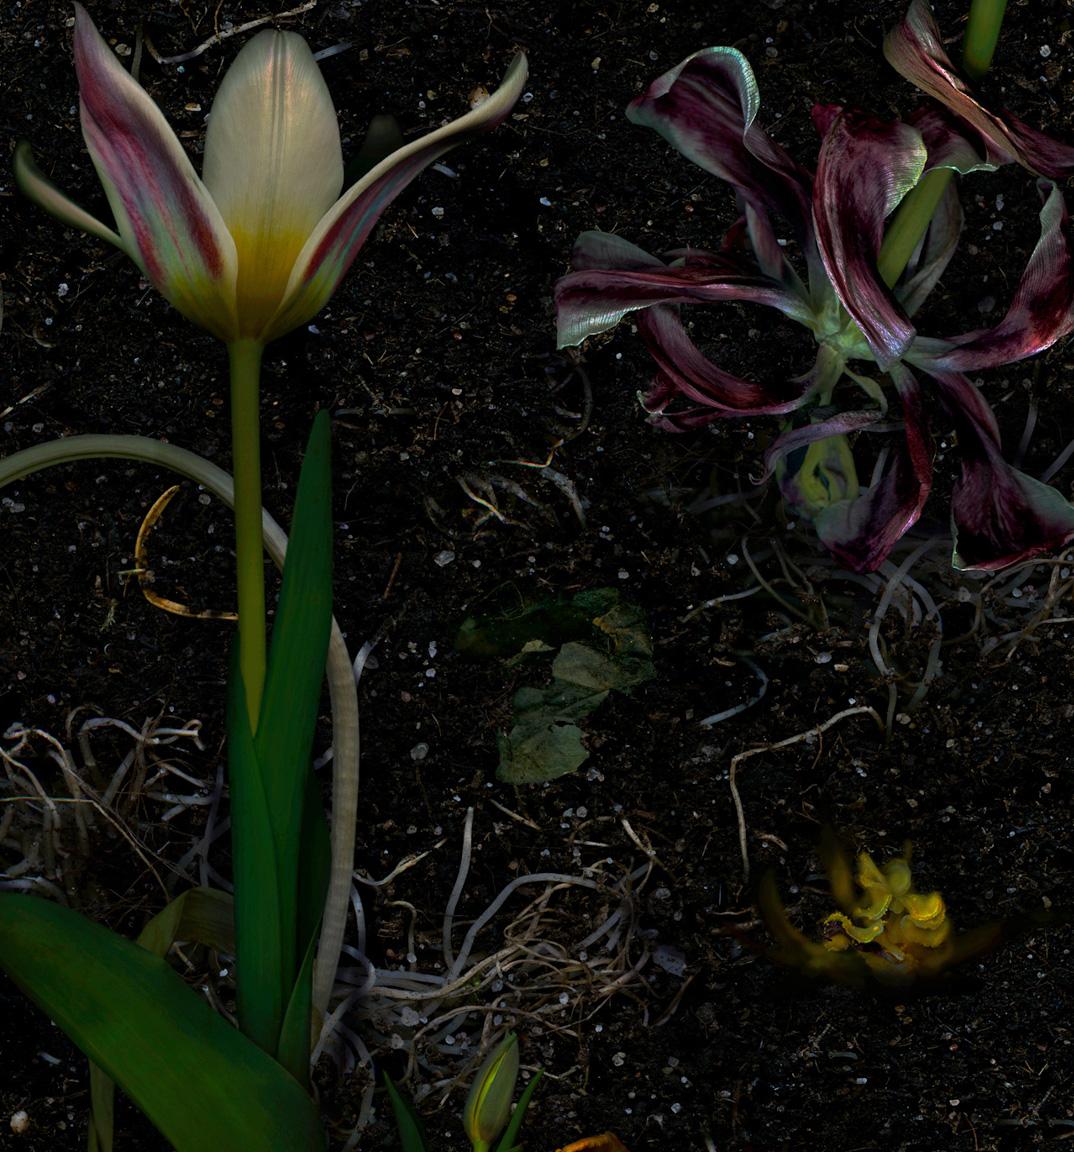 Régénération des tulipes, 2012 par Zoltan Gerliczki
De la série Nature morte
Impression pigmentaire d'archives sur papier d'art
Taille de l'image : 31,5 in H x 25,5 in W.
Edition de 6 + 2AP
Non encadré

En tant qu'artiste, il est fasciné par